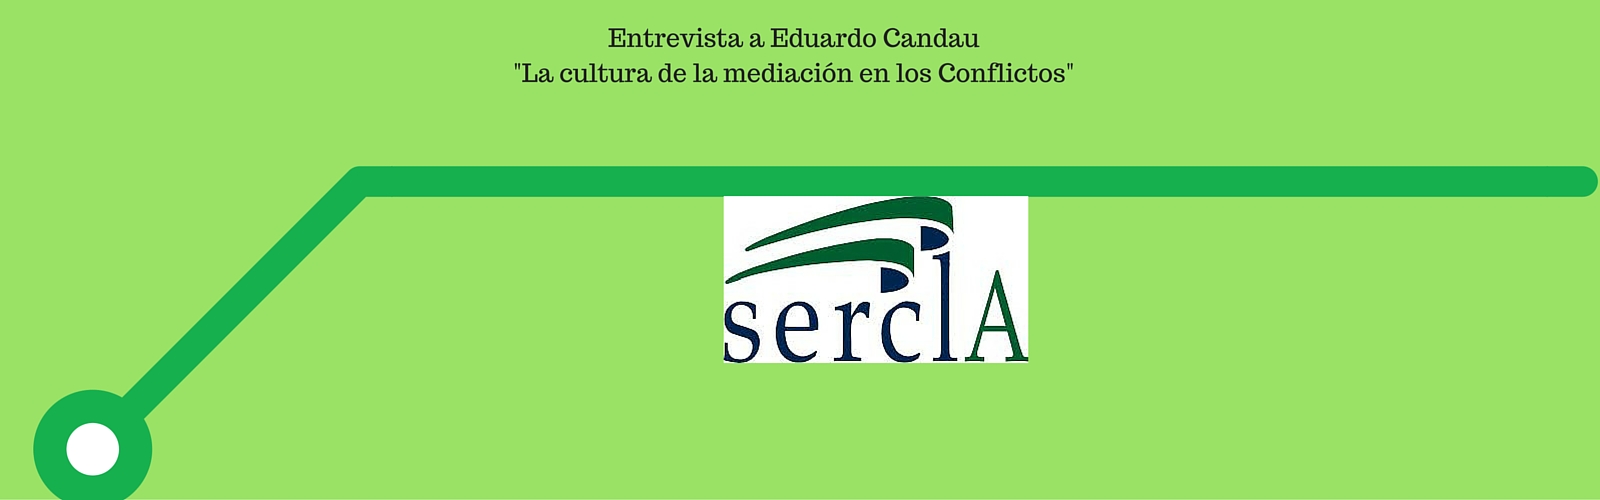 La cultura de la mediación en los conflictos, por Eduardo Candau Camacho